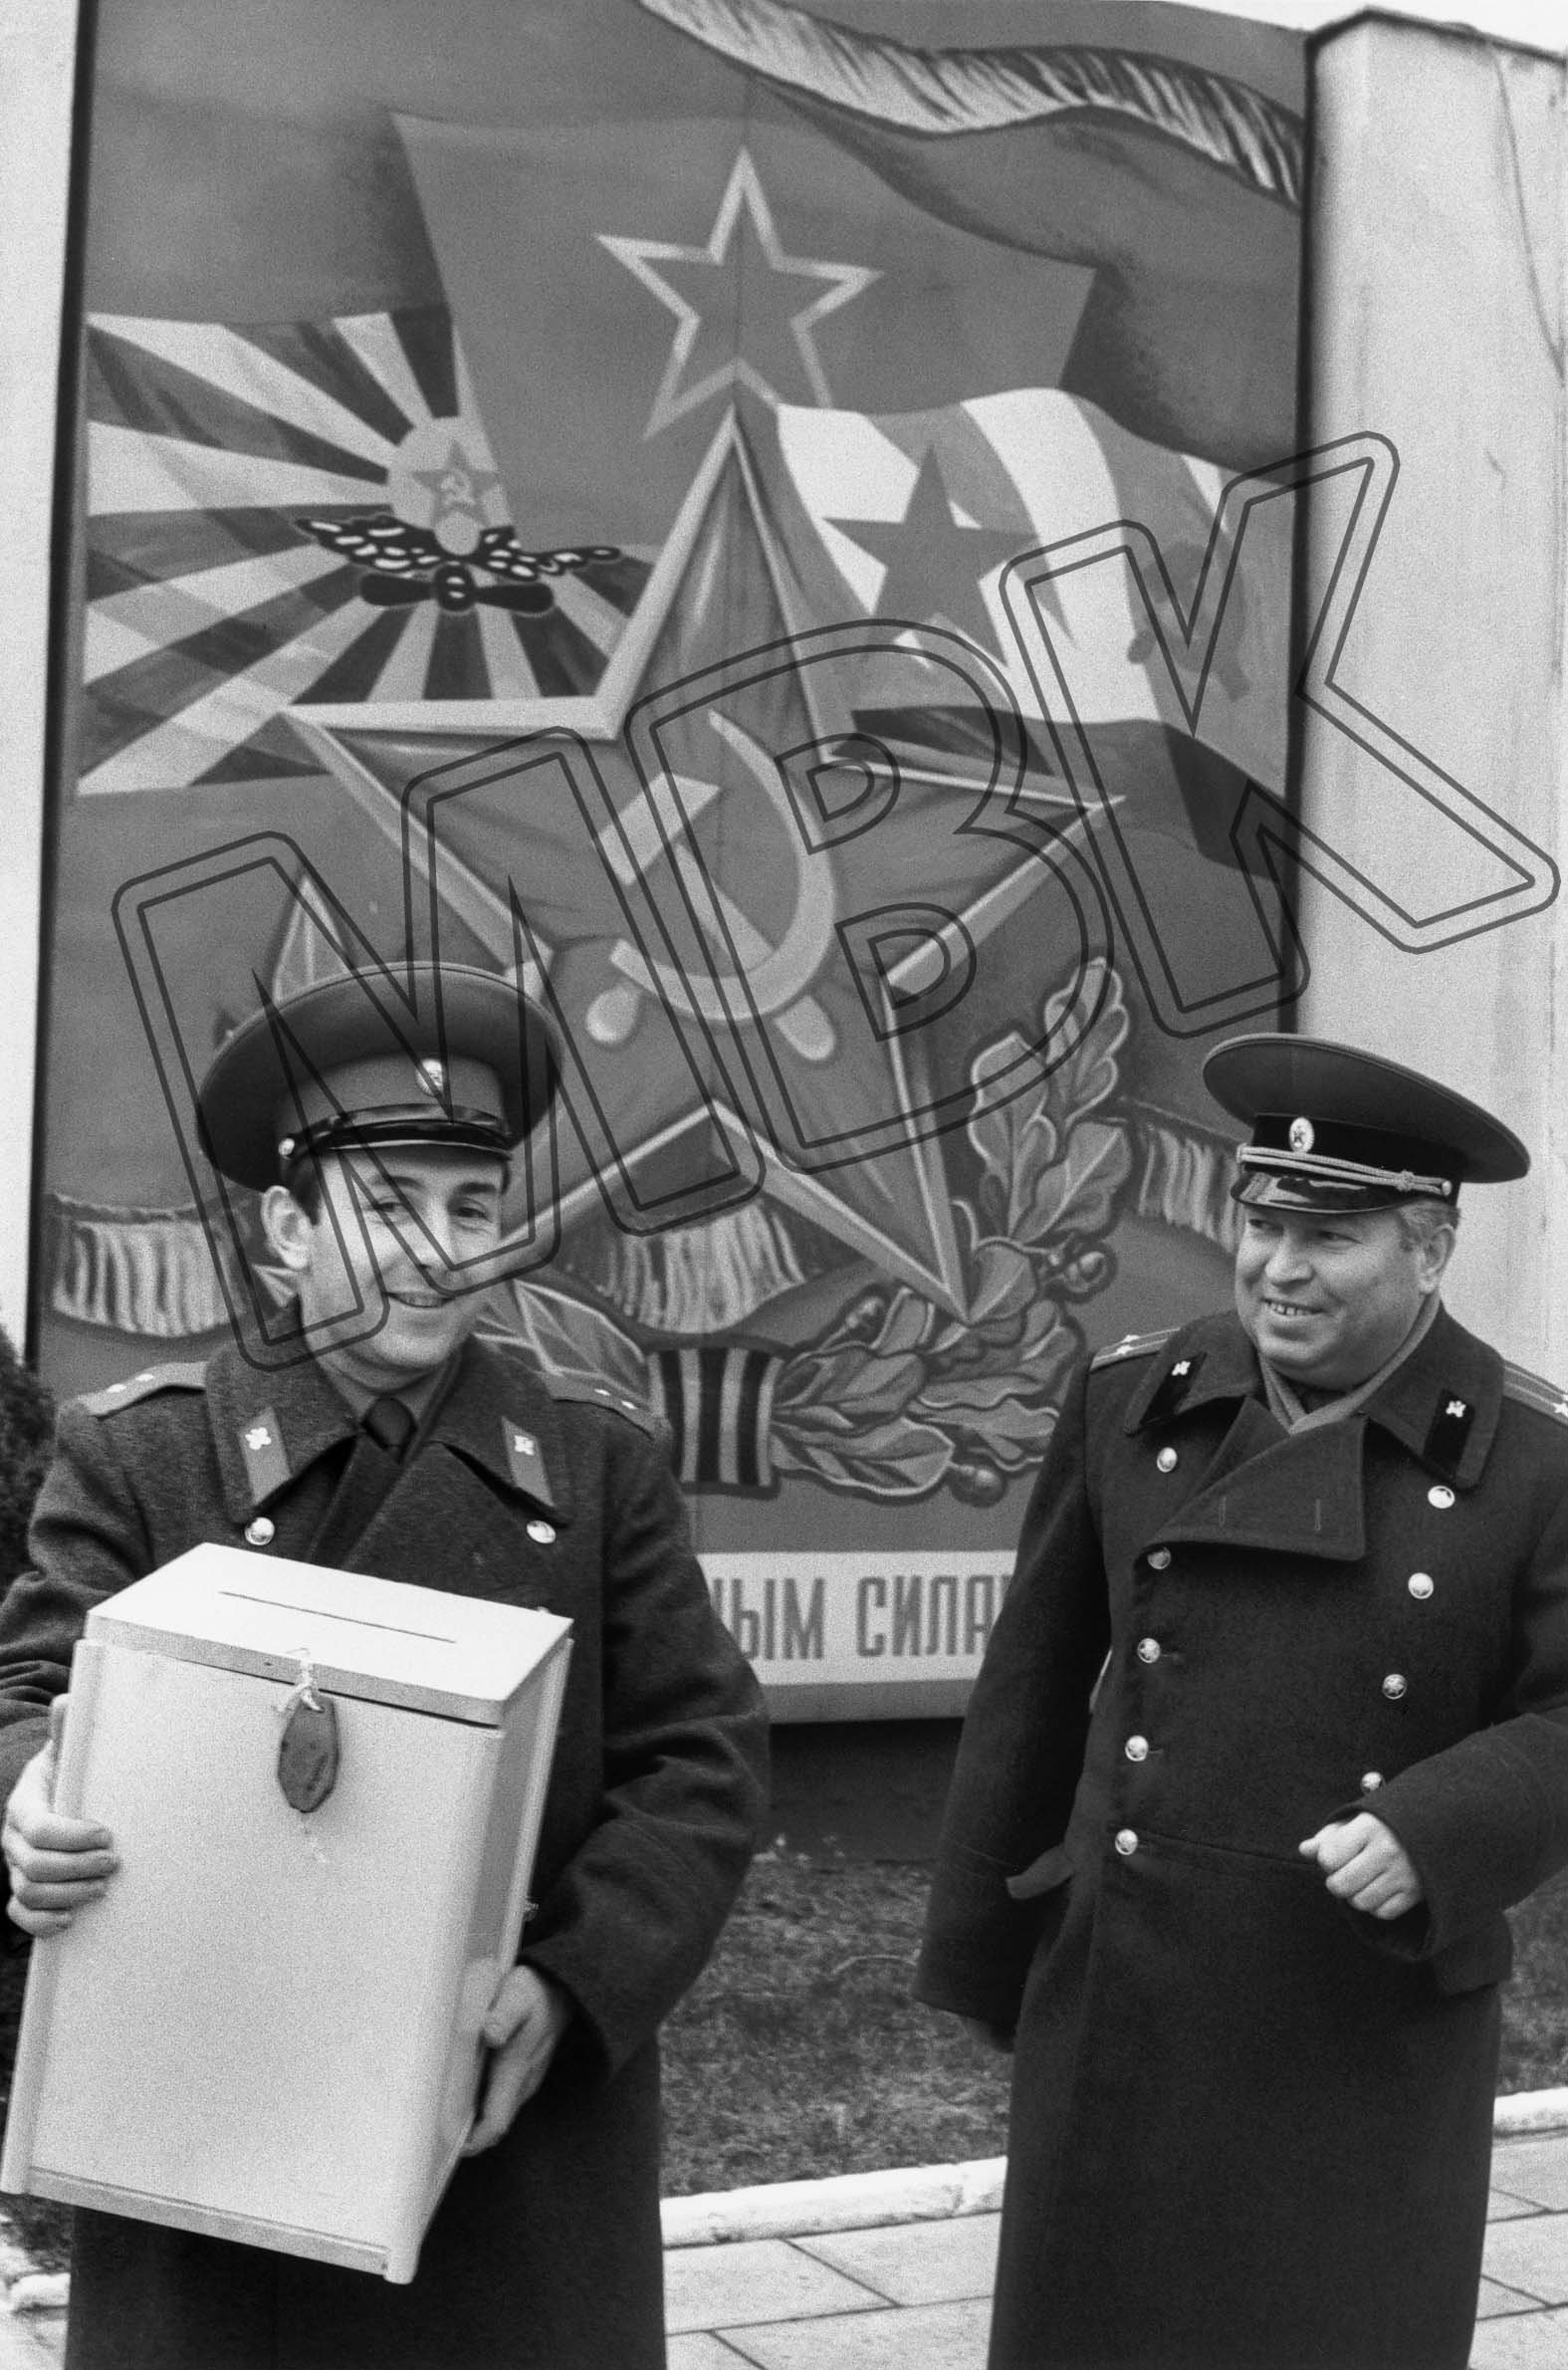 Fotografie: Offiziere tragen Wahlurnen, Garnison Potsdam, 4. März 1990 (Museum Berlin-Karlshorst RR-P)